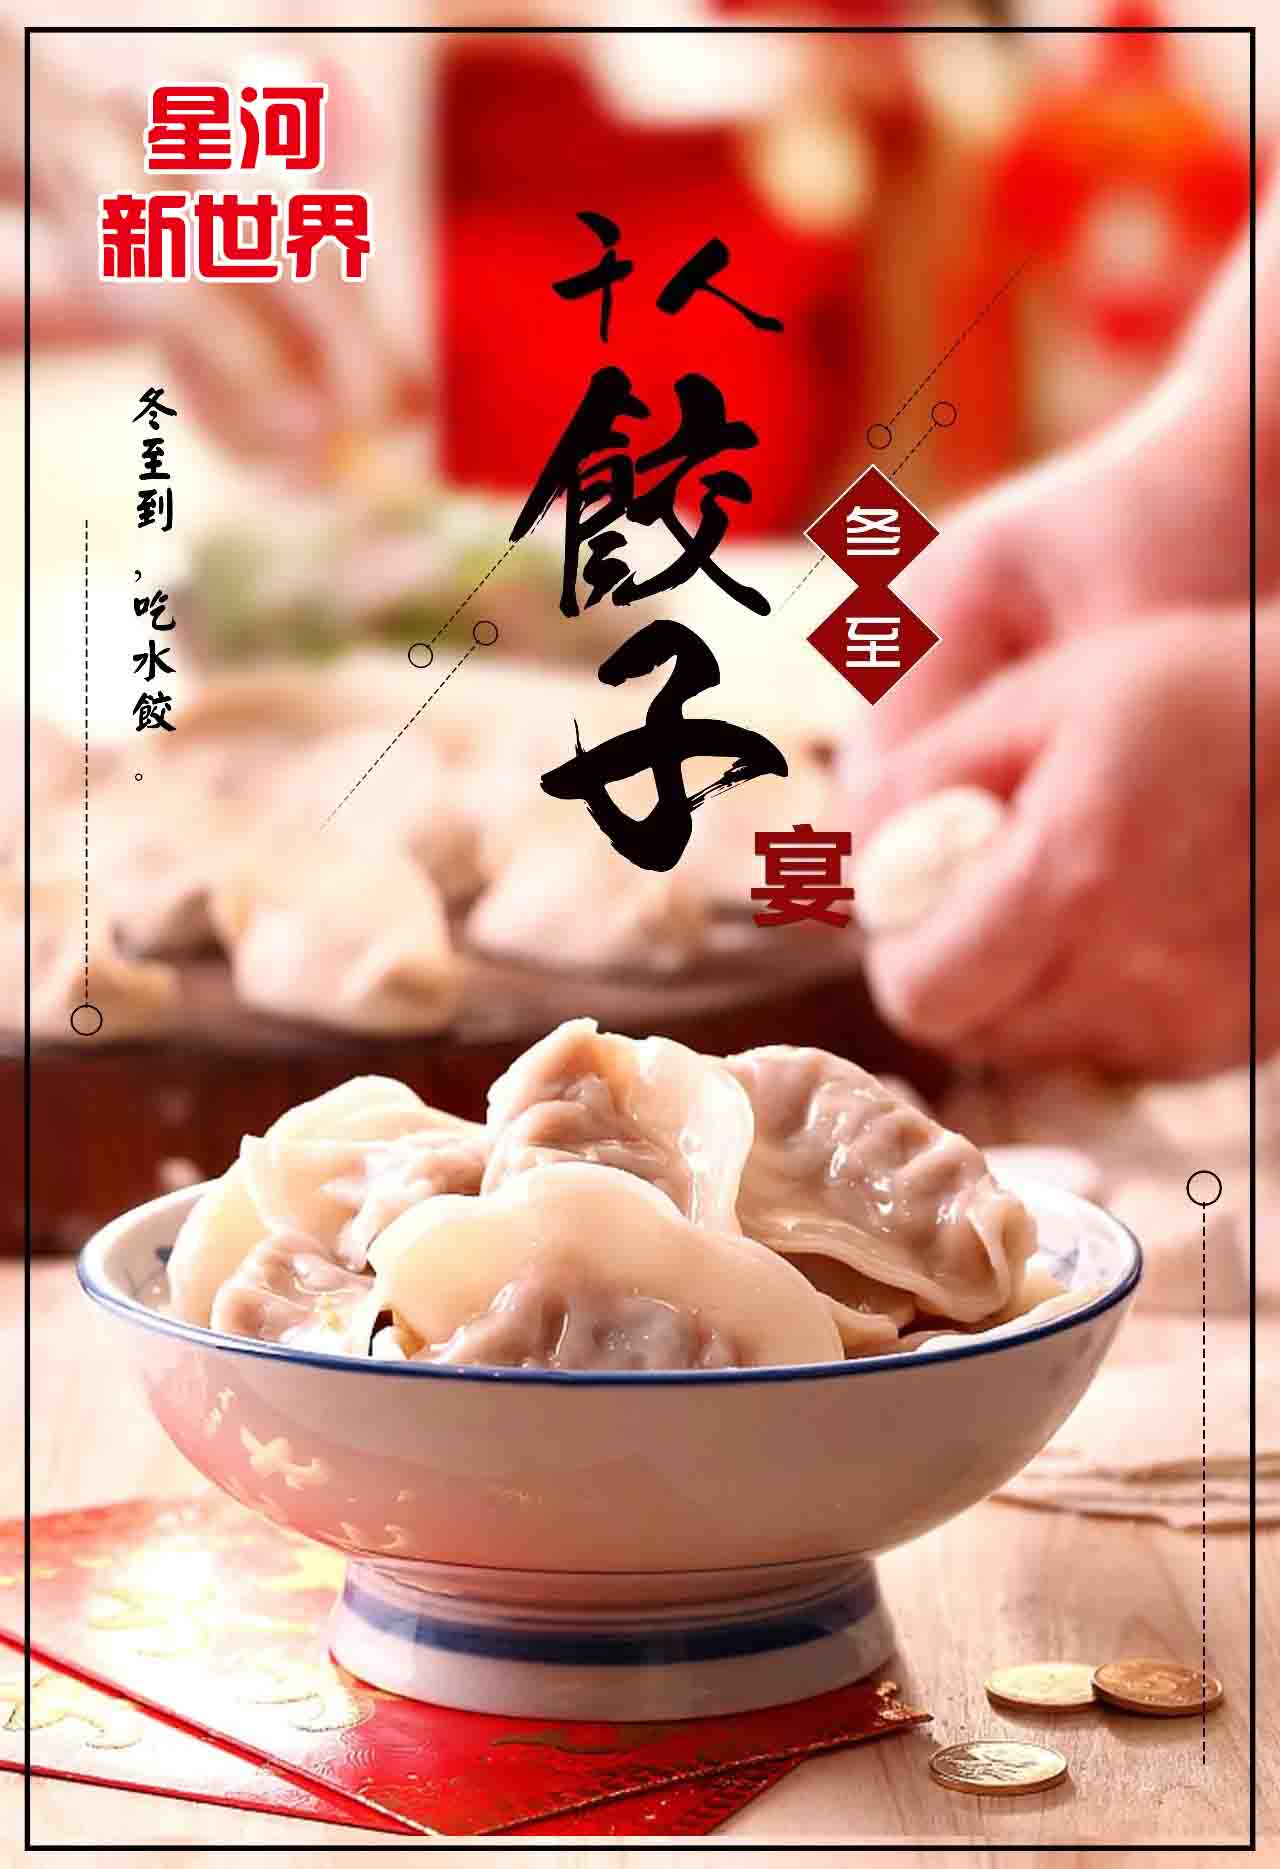 星河新世界大宴襄汾城|千斤饺子万人免费吃!